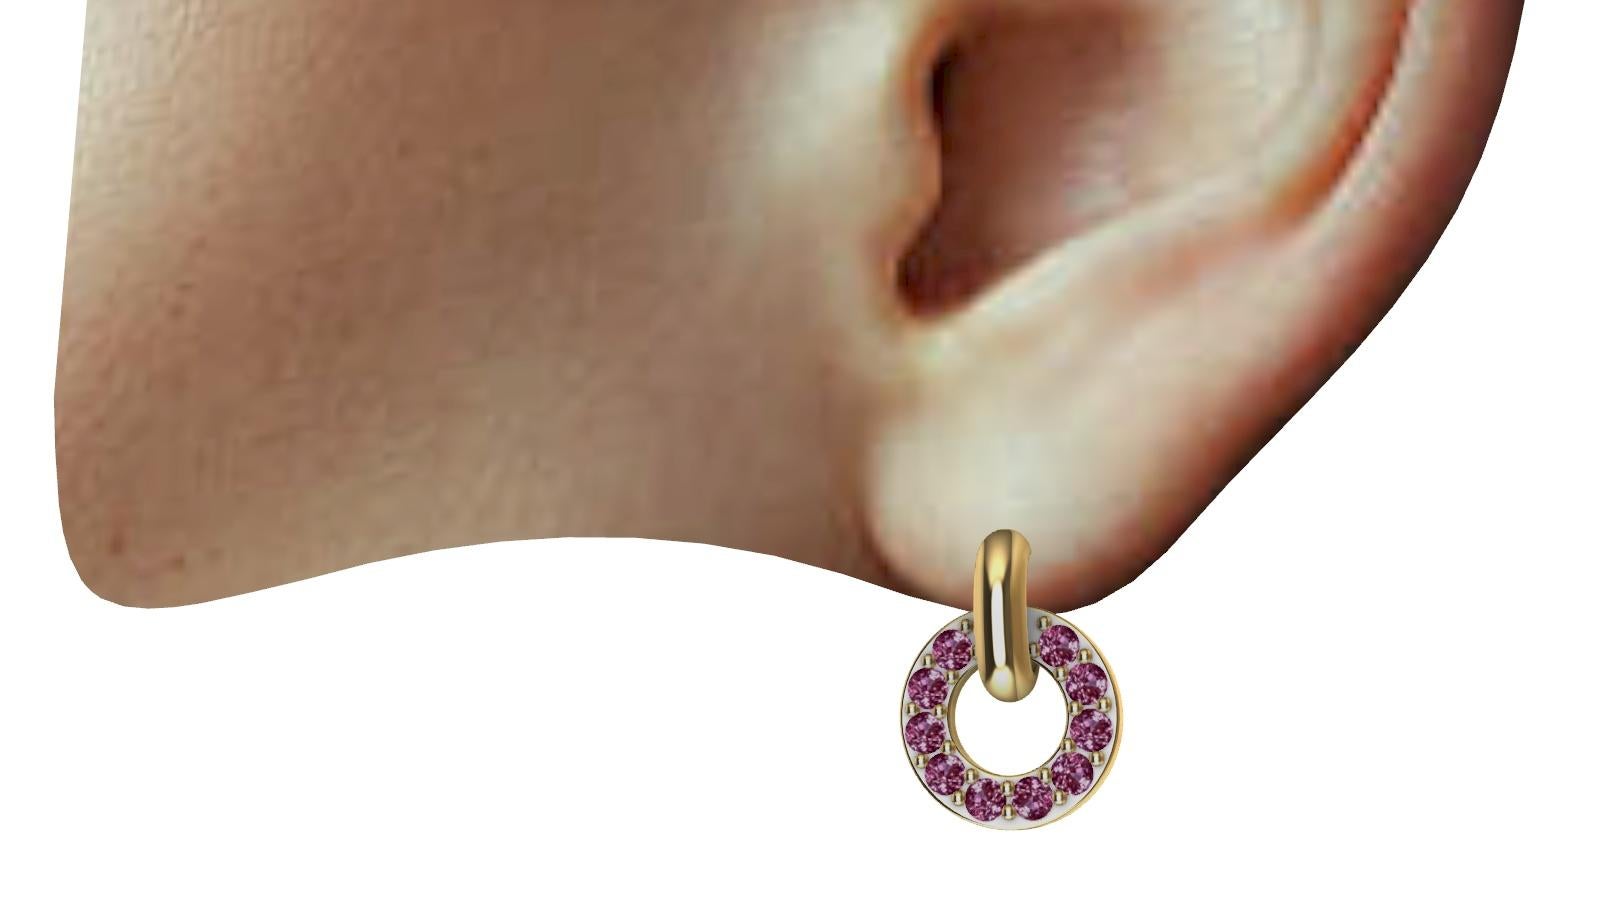  boucles d'oreilles pendantes en or jaune 18 carats, saphirs roses taillés en diamant, Ces boucles sont petites. L'anneau d'oreille 14mm x 10.5 mm de diamètre. Minuscule mais puissant. Élégance toute la journée, du jour au soir sans problème.  Ce